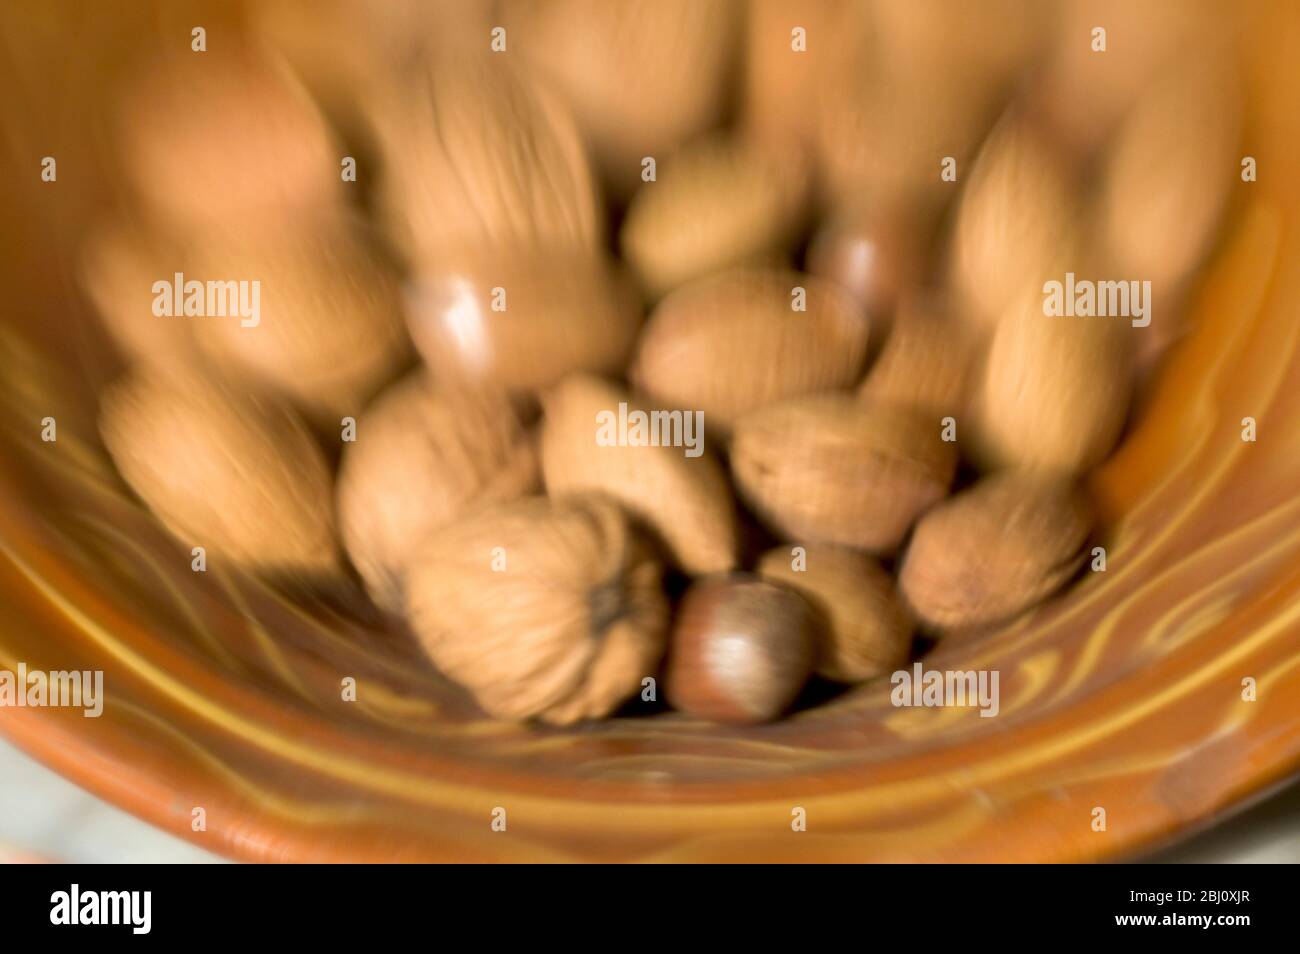 Cuenco cerámico de barro marrón de frutos secos mezclados en sus conchas. Grabado con lente de lensbabies - Foto de stock